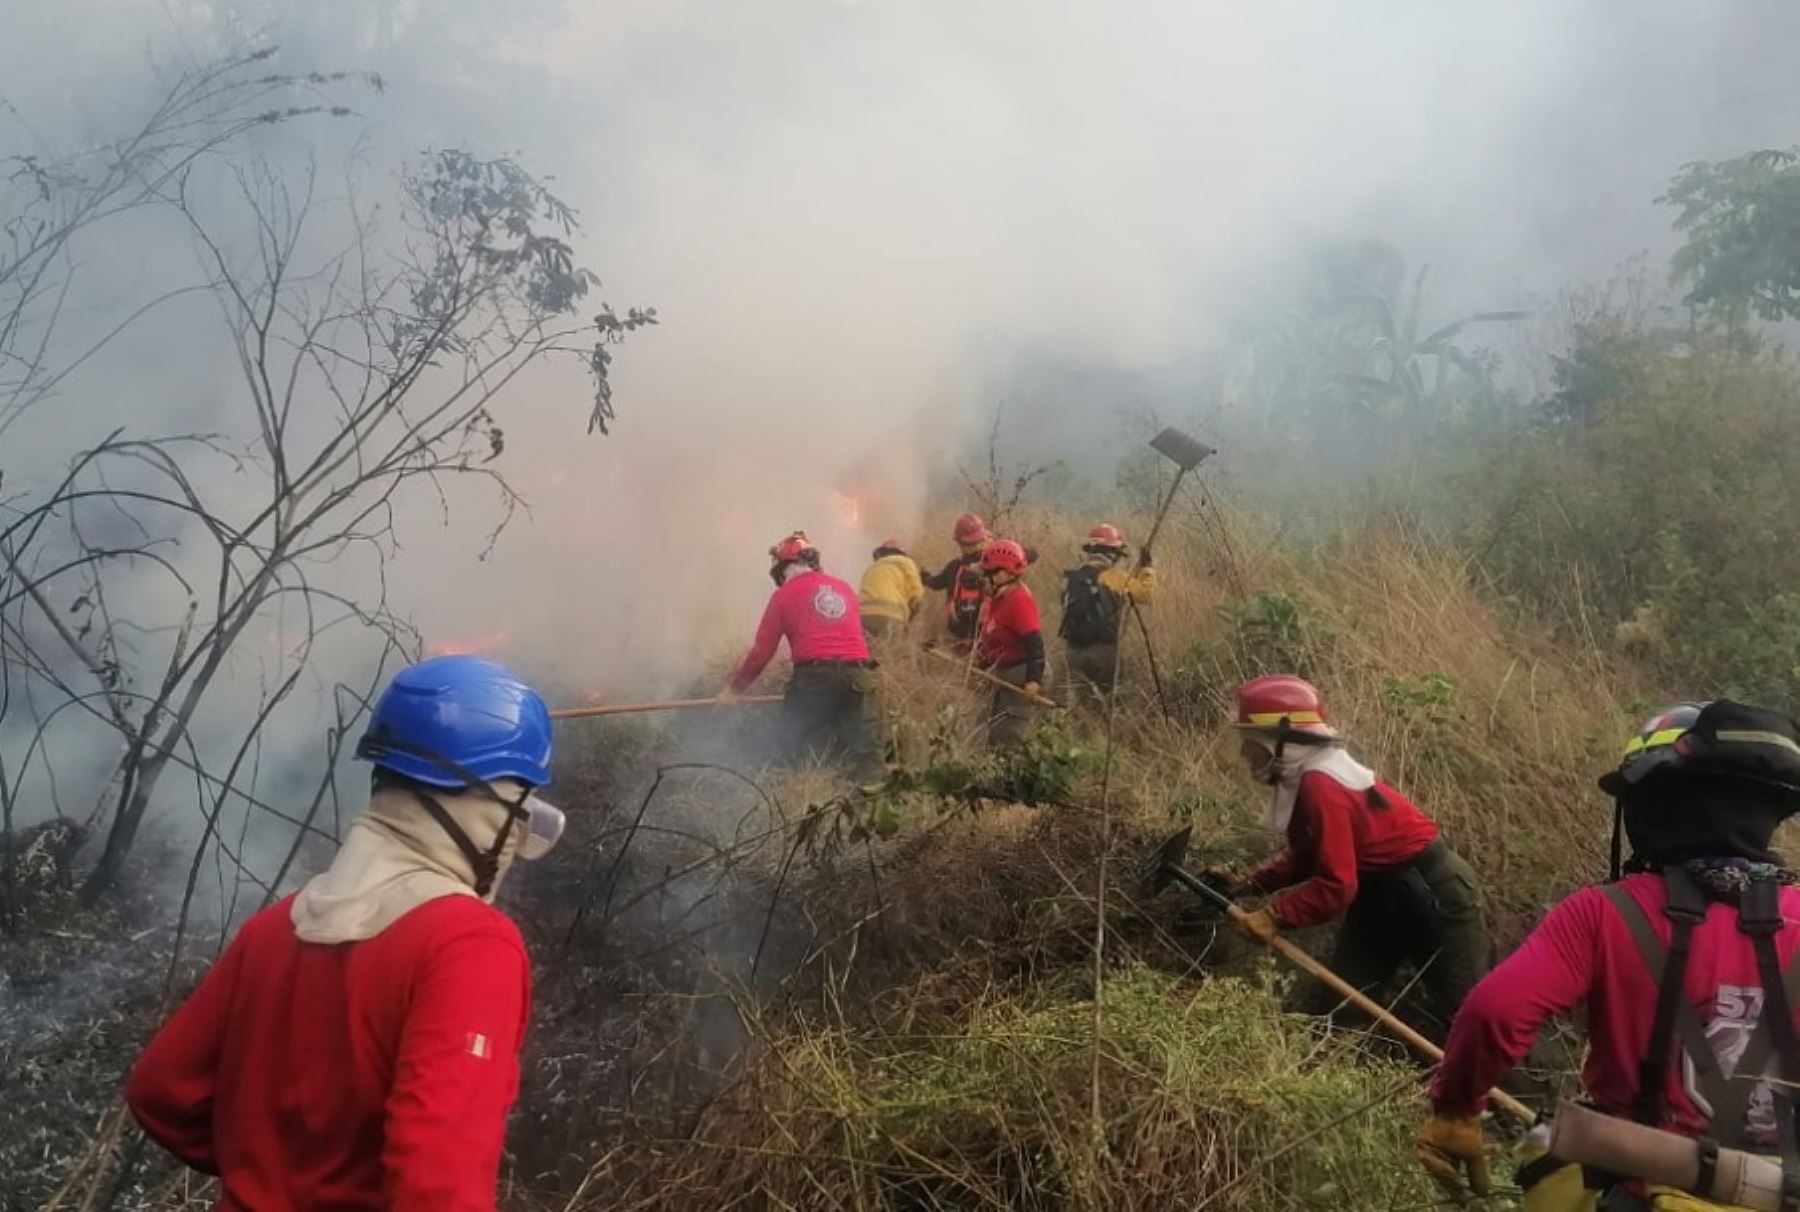 Brigadas de bomberos y efectivos del Ejercito del Perú, con apoyo de las autoridades locales, lograron controlar el incendio forestal iniciado el 21 de agosto en el centro poblado San Martín, ubicado en el distrito de Yanatile, provincia de Calca, región Cusco. ANDINA/Difusión